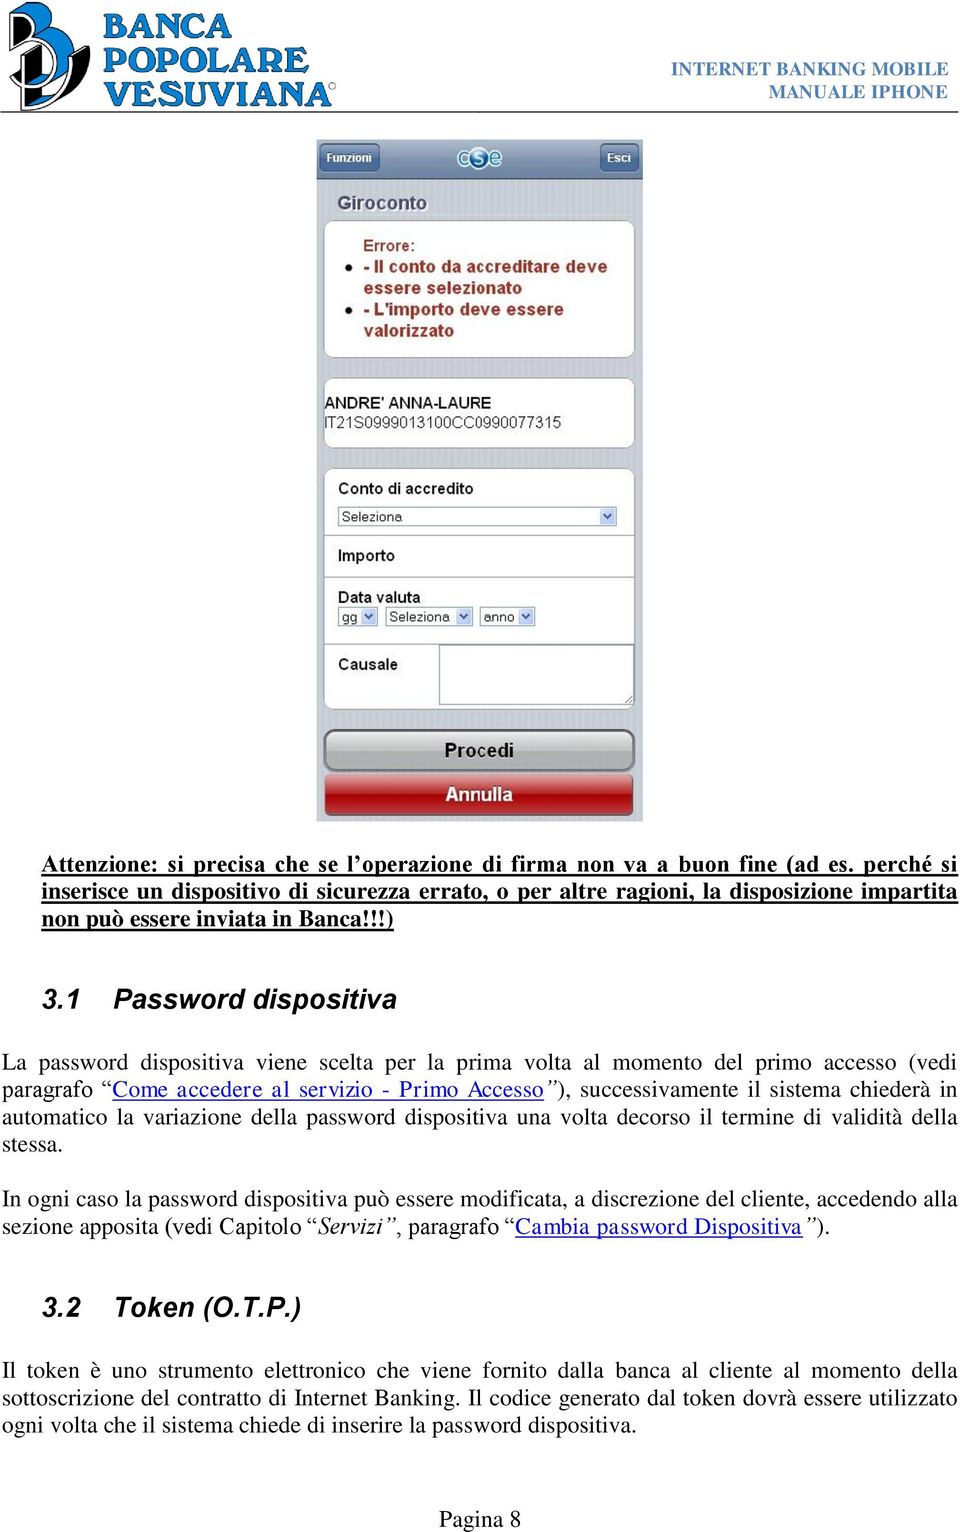 1 Password dispositiva La password dispositiva viene scelta per la prima volta al momento del primo accesso (vedi paragrafo Come accedere al servizio - Primo Accesso ), successivamente il sistema